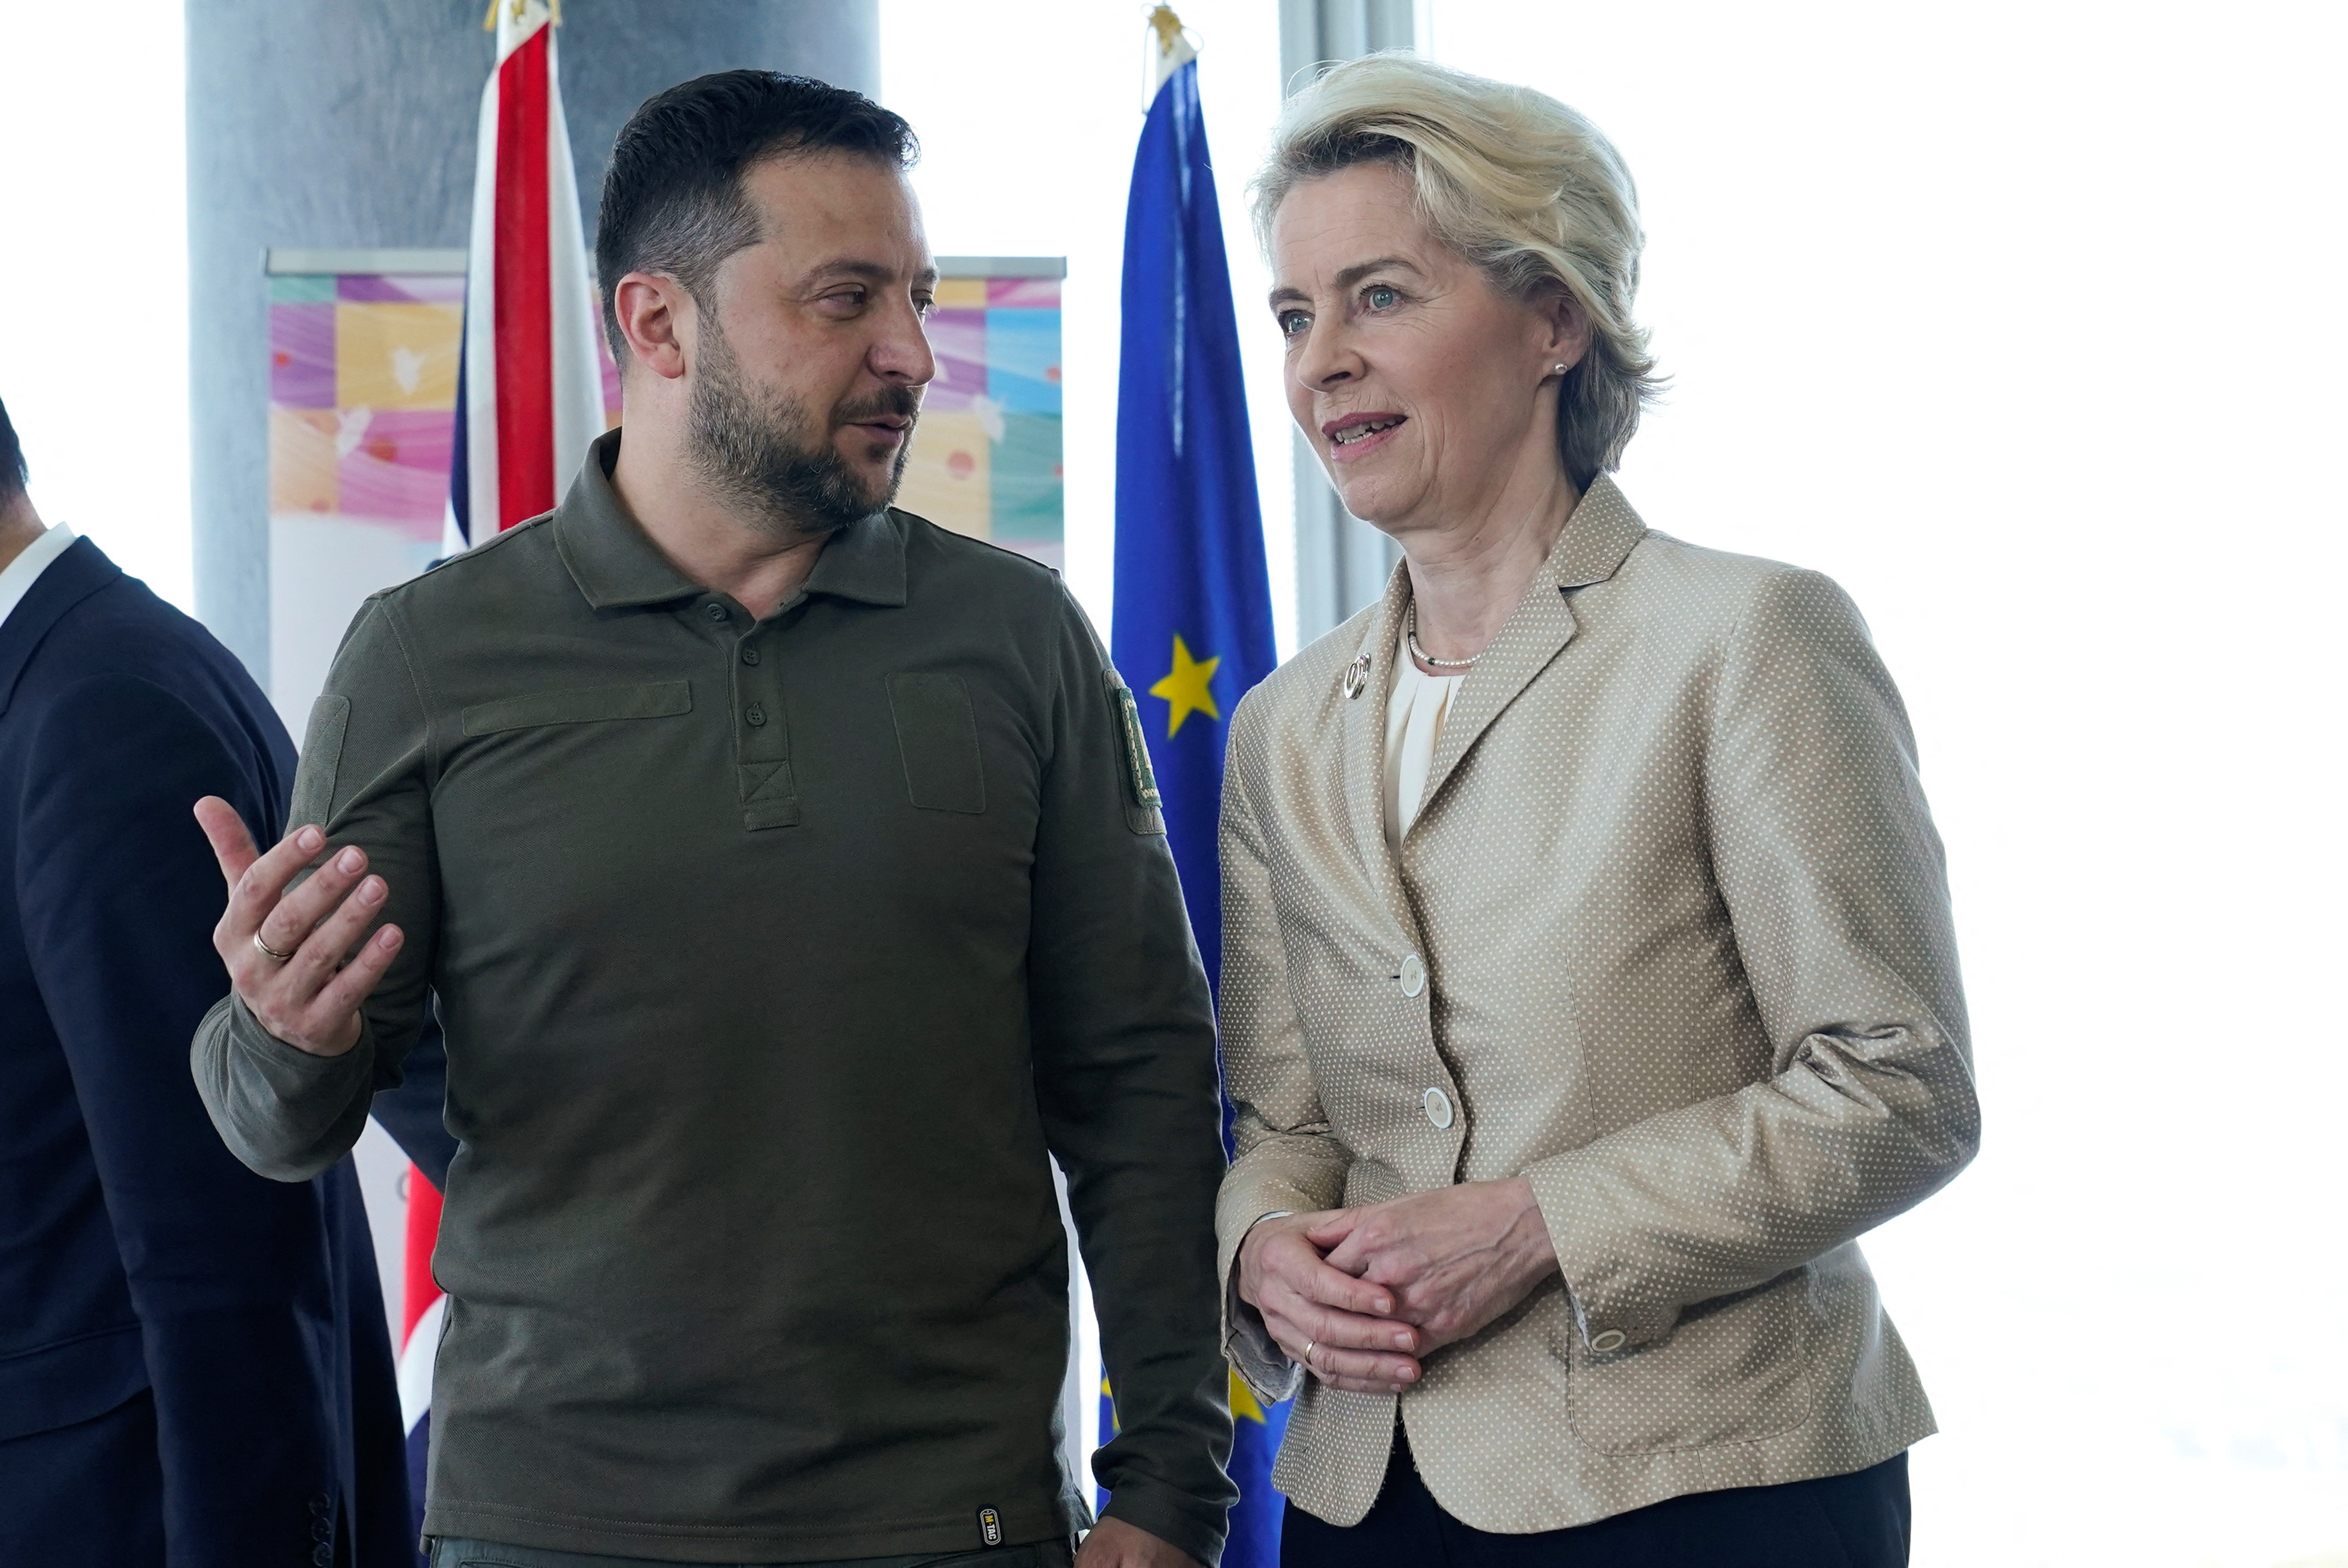 En las imágenes se pudo ver cómo la presidenta de la Comisión Europea, Ursula von der Leyen, conversaba de forma amistosa con el mandatario de Kiev. (REUTERS)